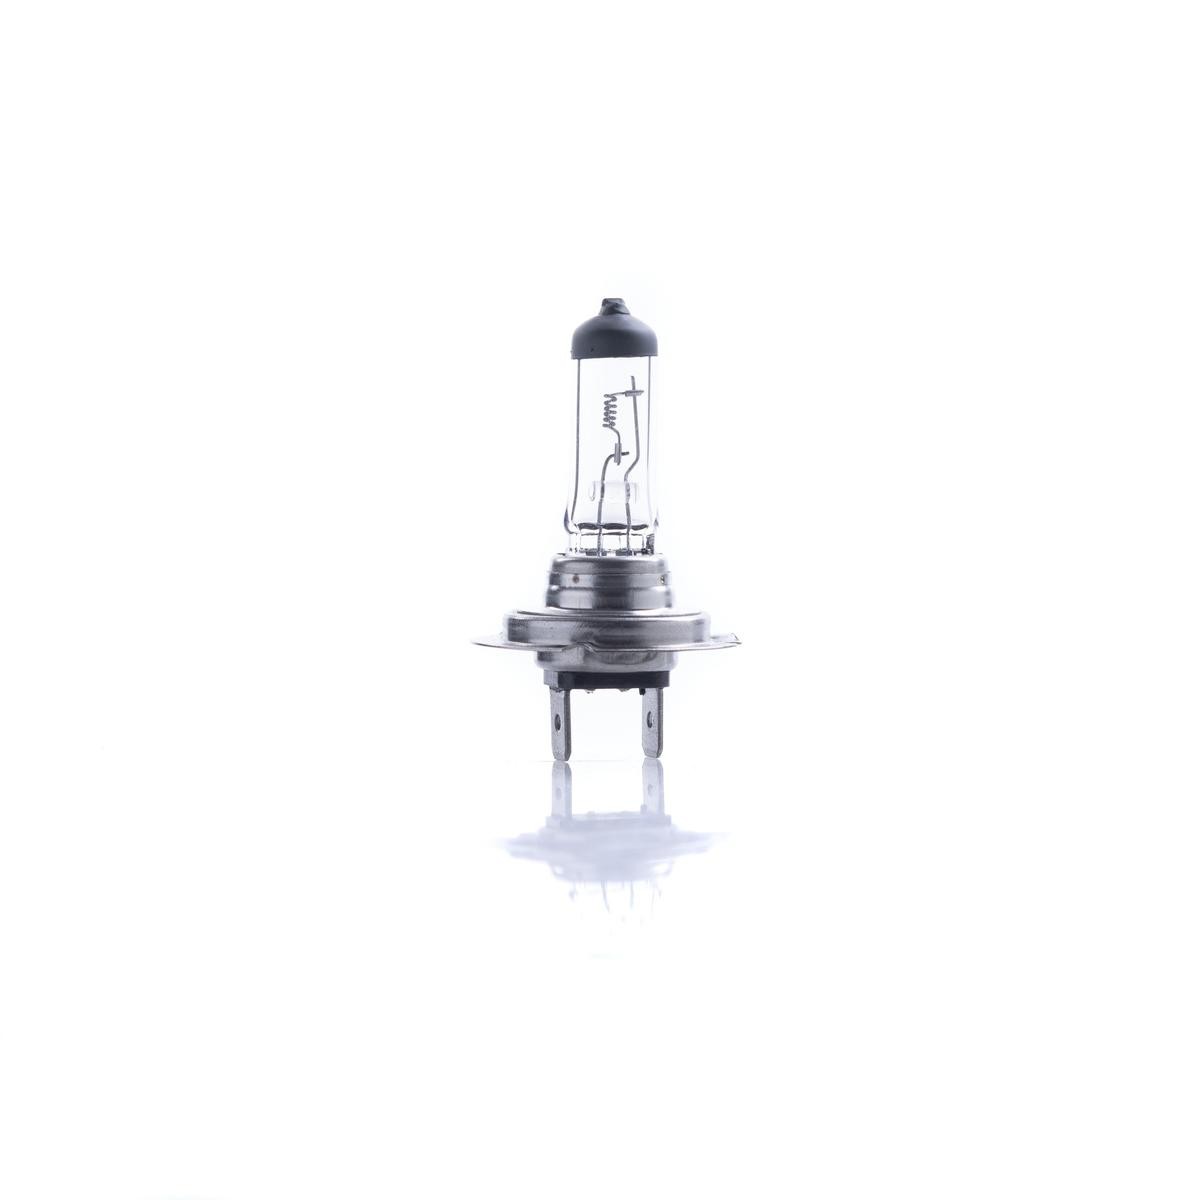 Abblendlicht-Glühlampe für OPEL ADAM LED und Xenon günstig kaufen